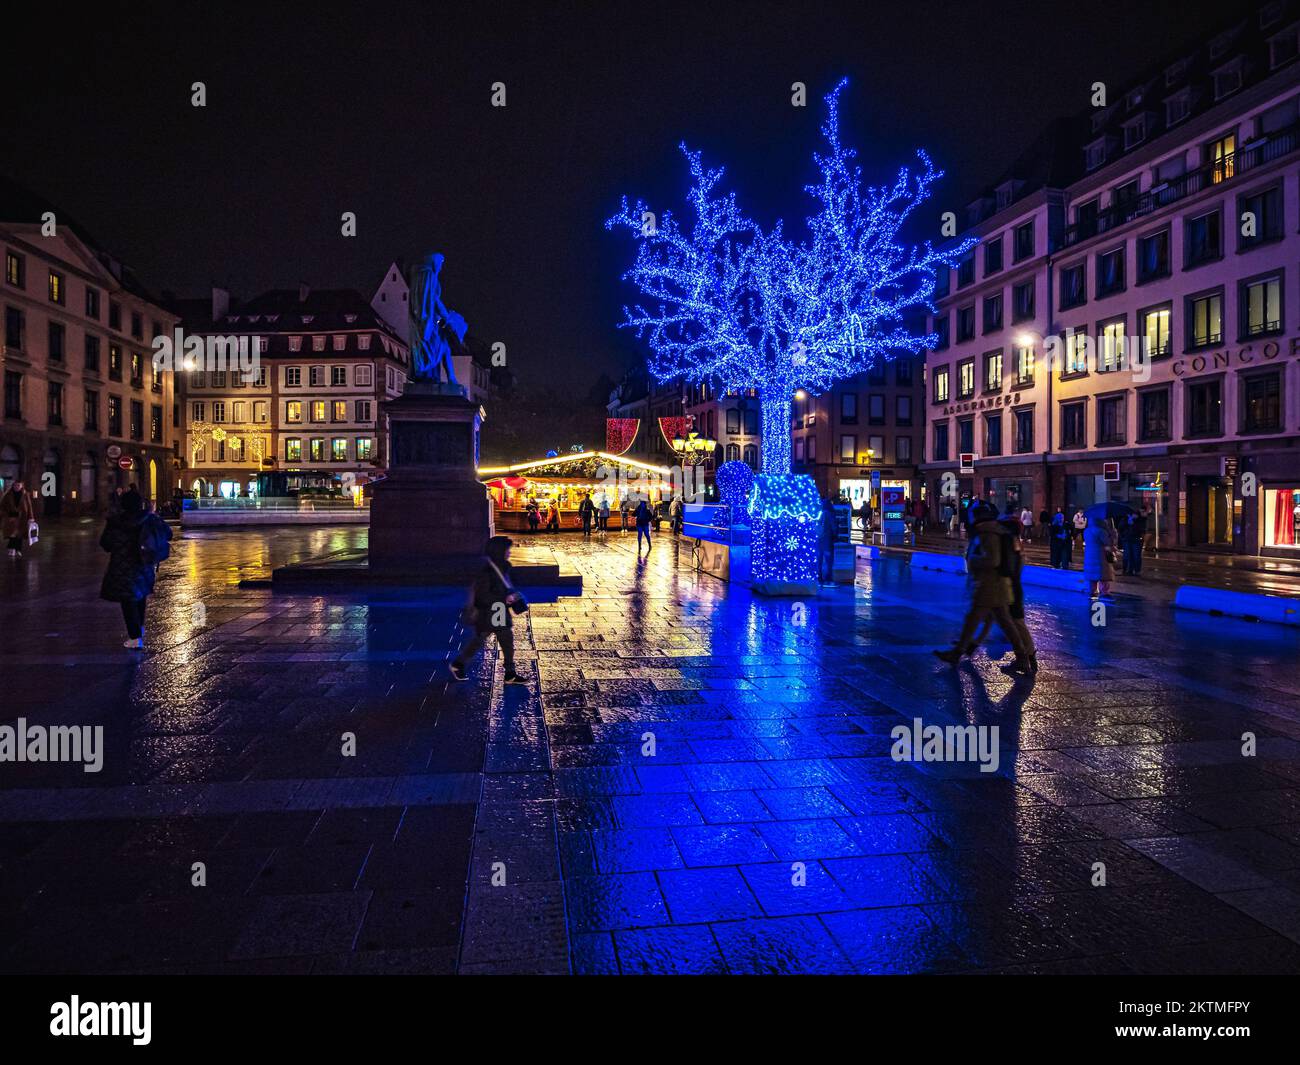 Décorations de Noël dans les rues de Strasbourg, la capitale de Noël. Marché de Noël. France. Banque D'Images